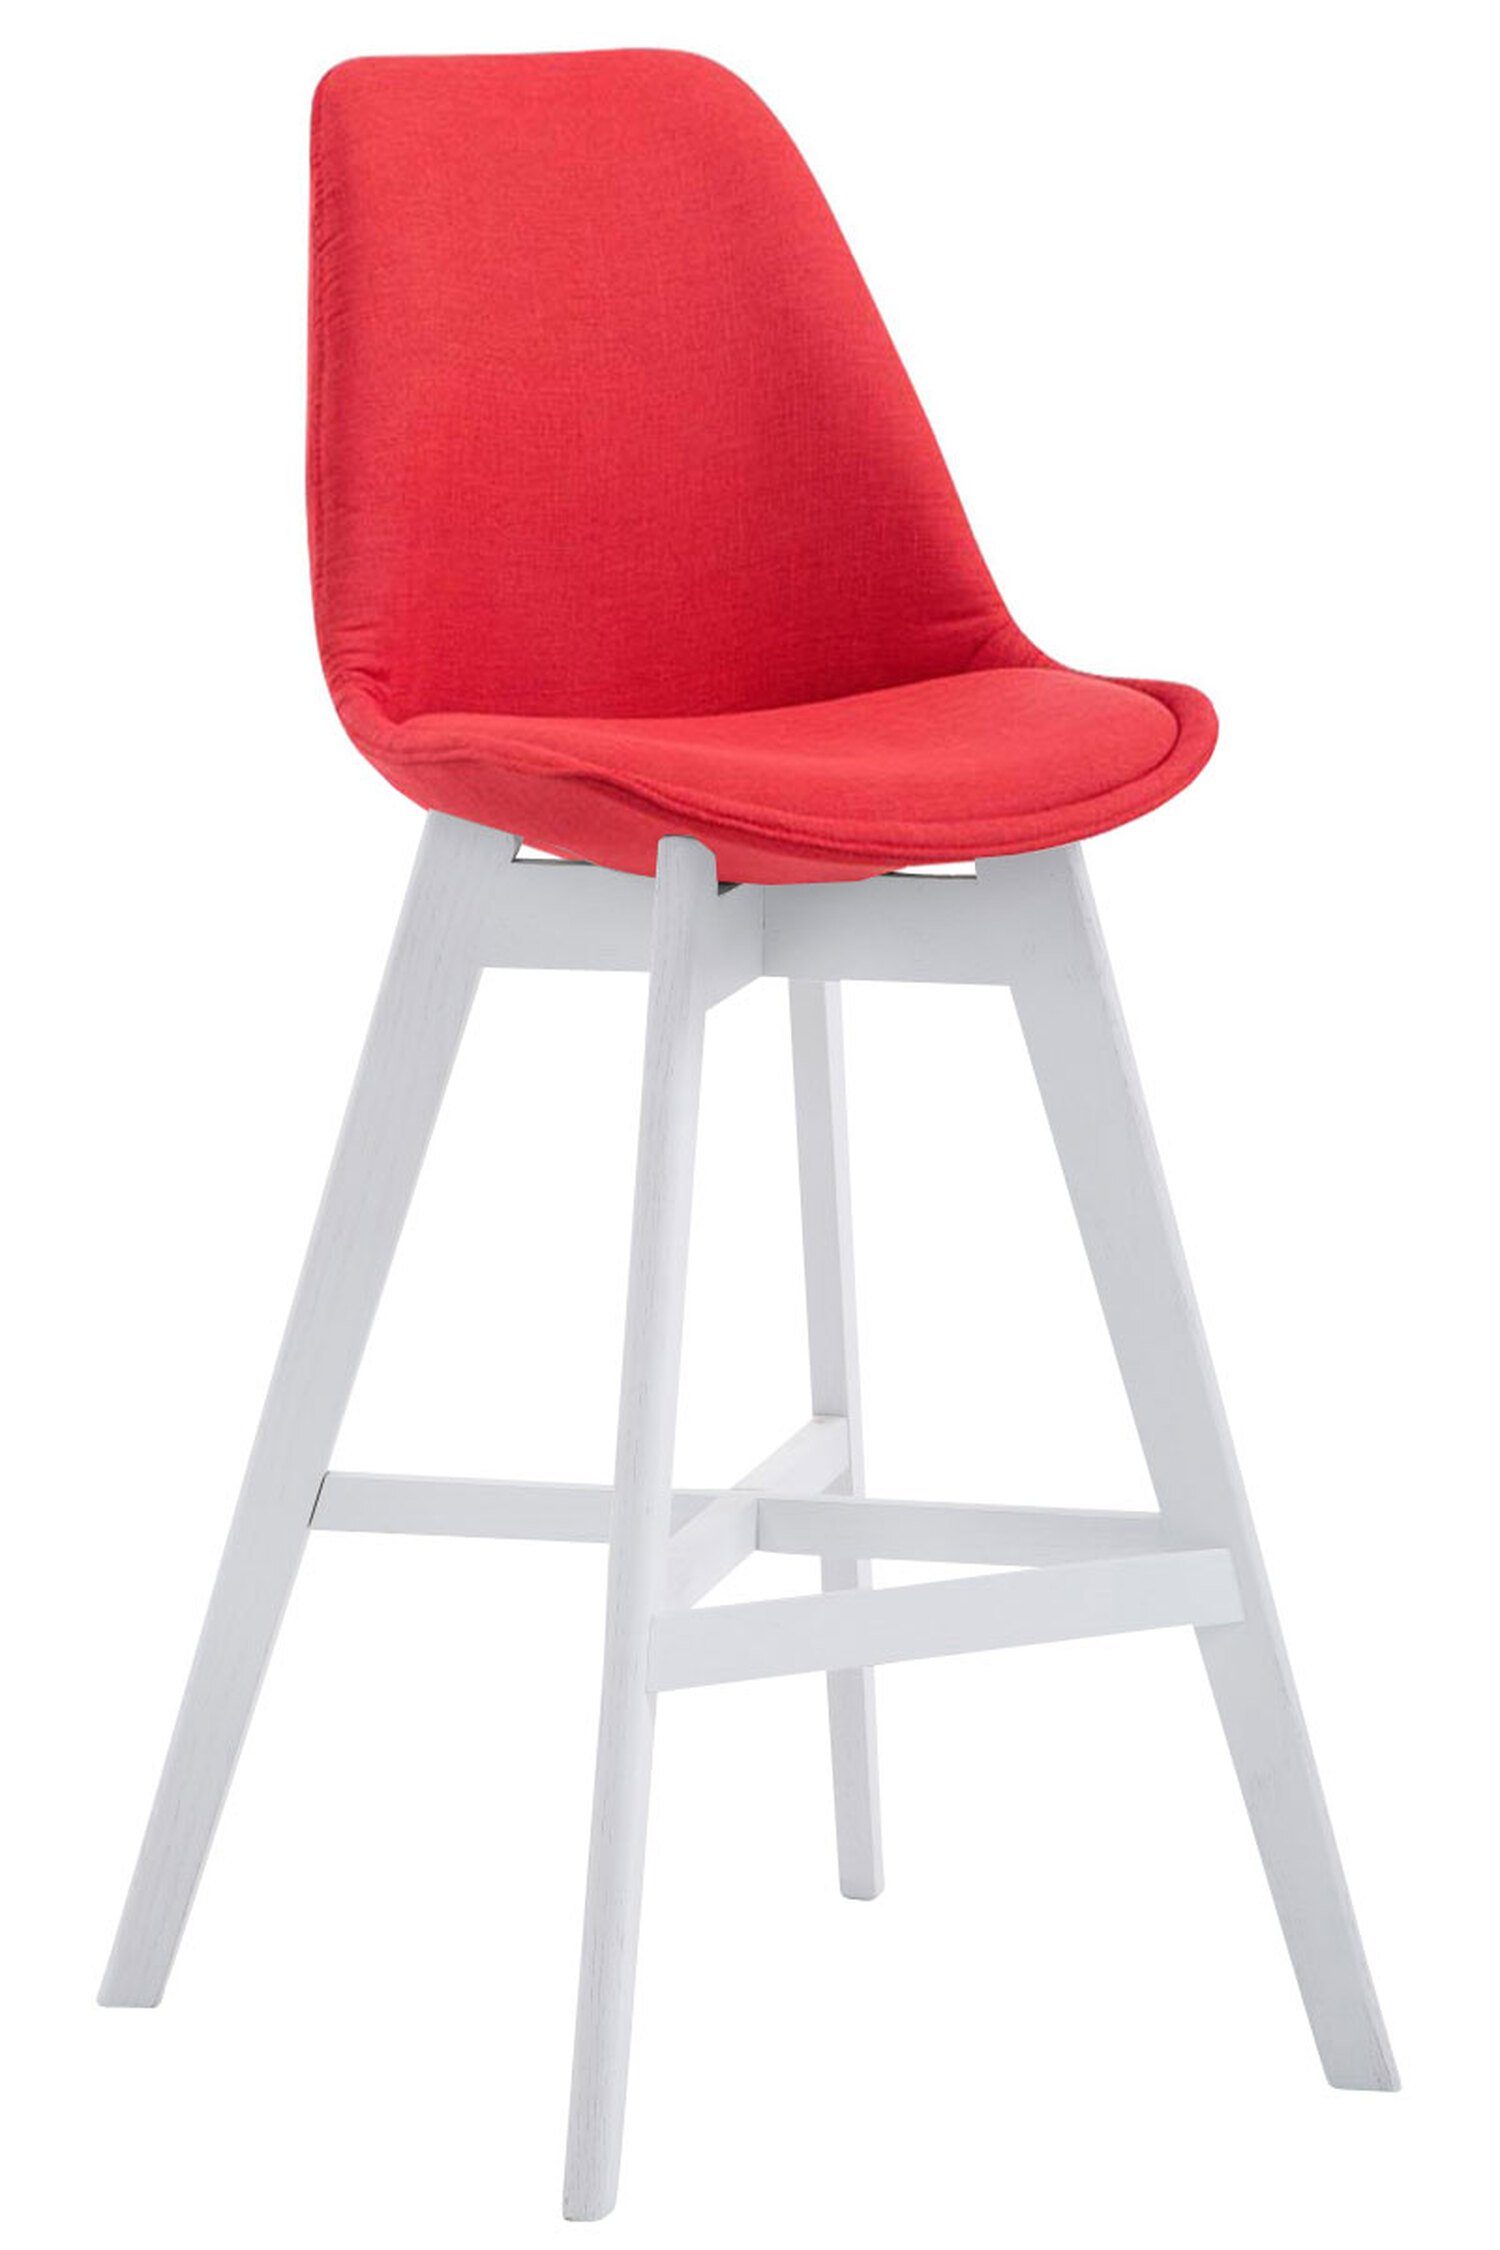 TPFLiving Barhocker Canada mit bequemer Rückenlehne und angenehmer Fußstütze (Barstuhl Hocker für Theke & Küche), 4-Fuß Gestell Holz Weiß - Sitzfläche: Stoff Rot